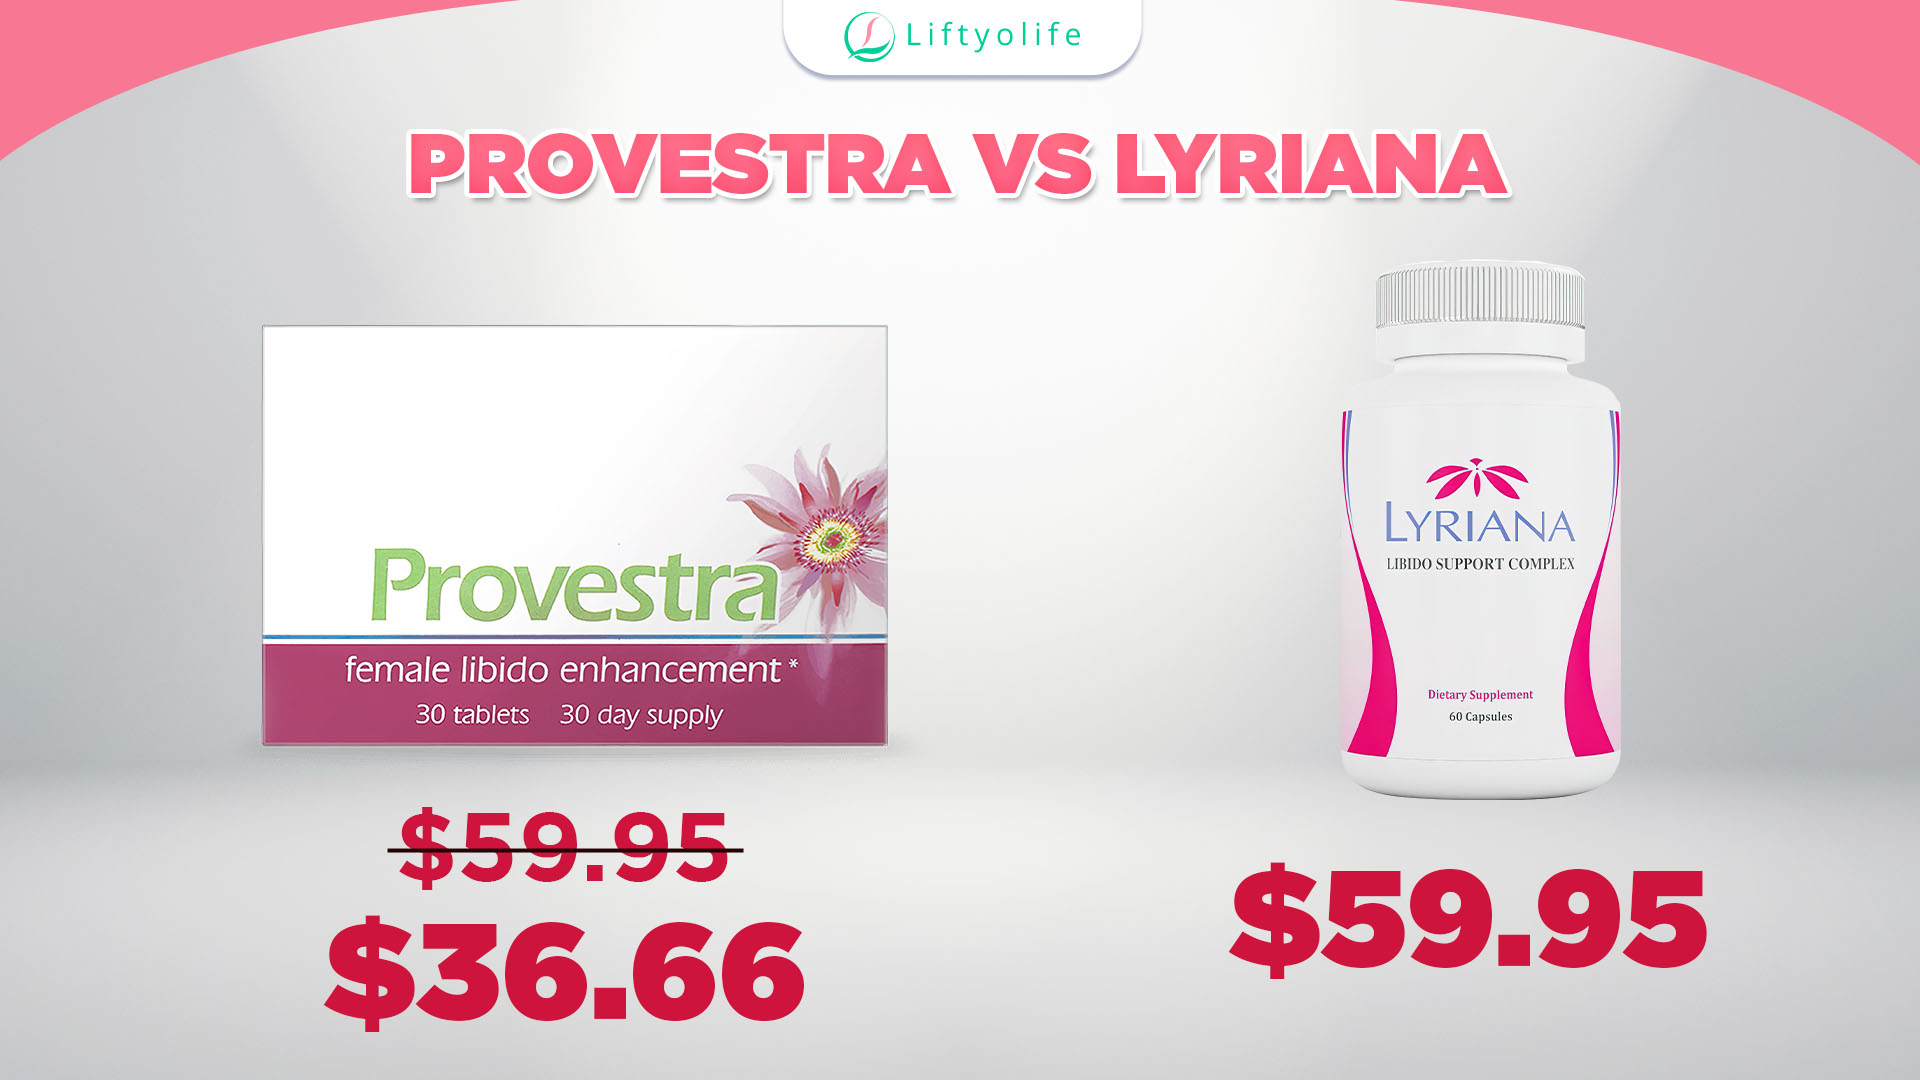 Provestra Vs Lyriana: The Price